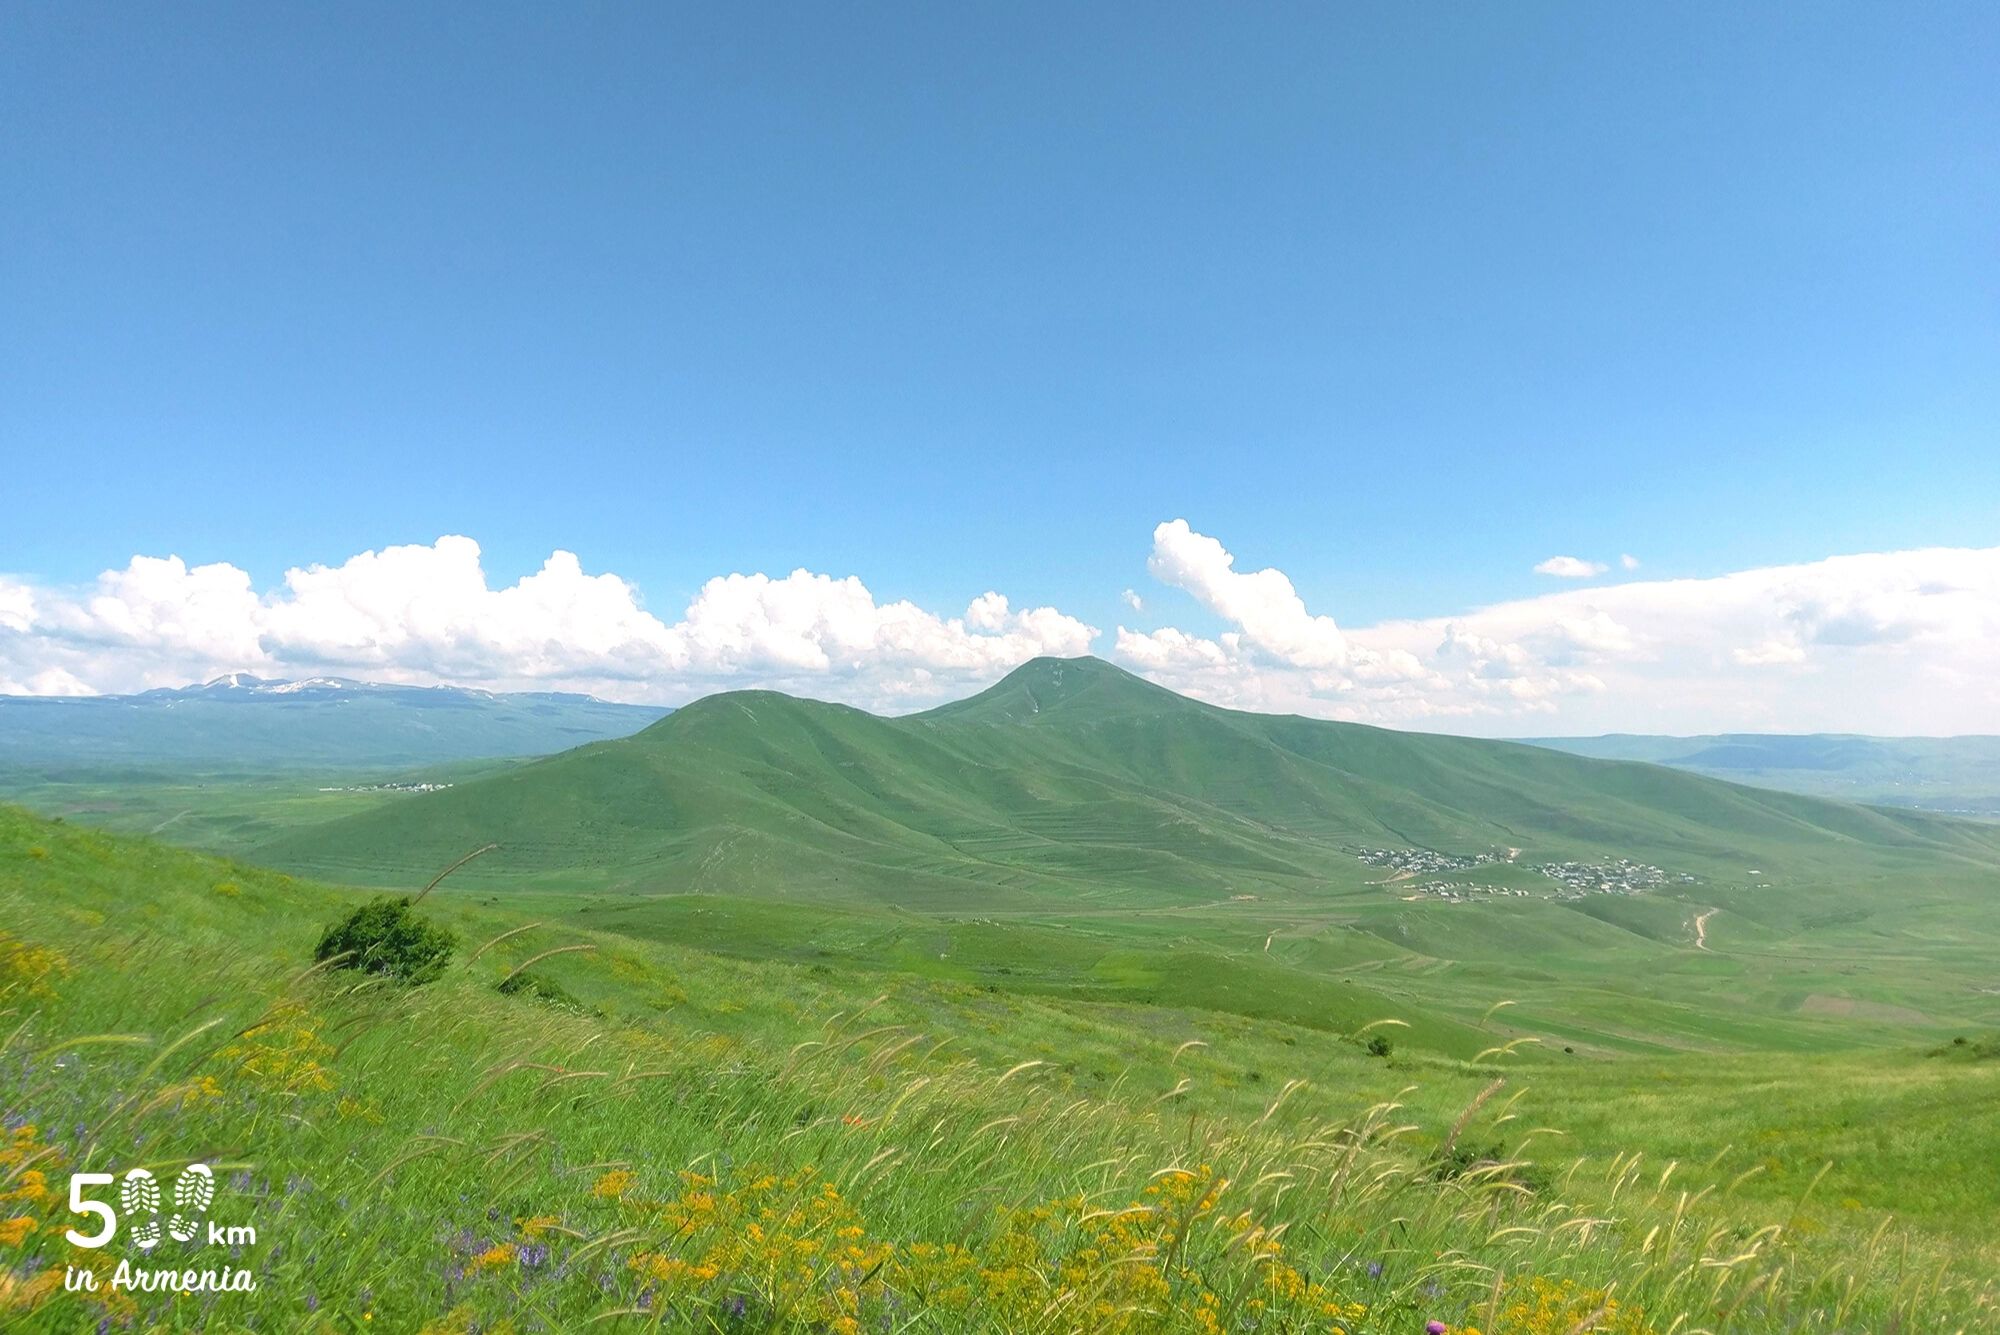 Հատիս - 500 կմ Հայաստանում